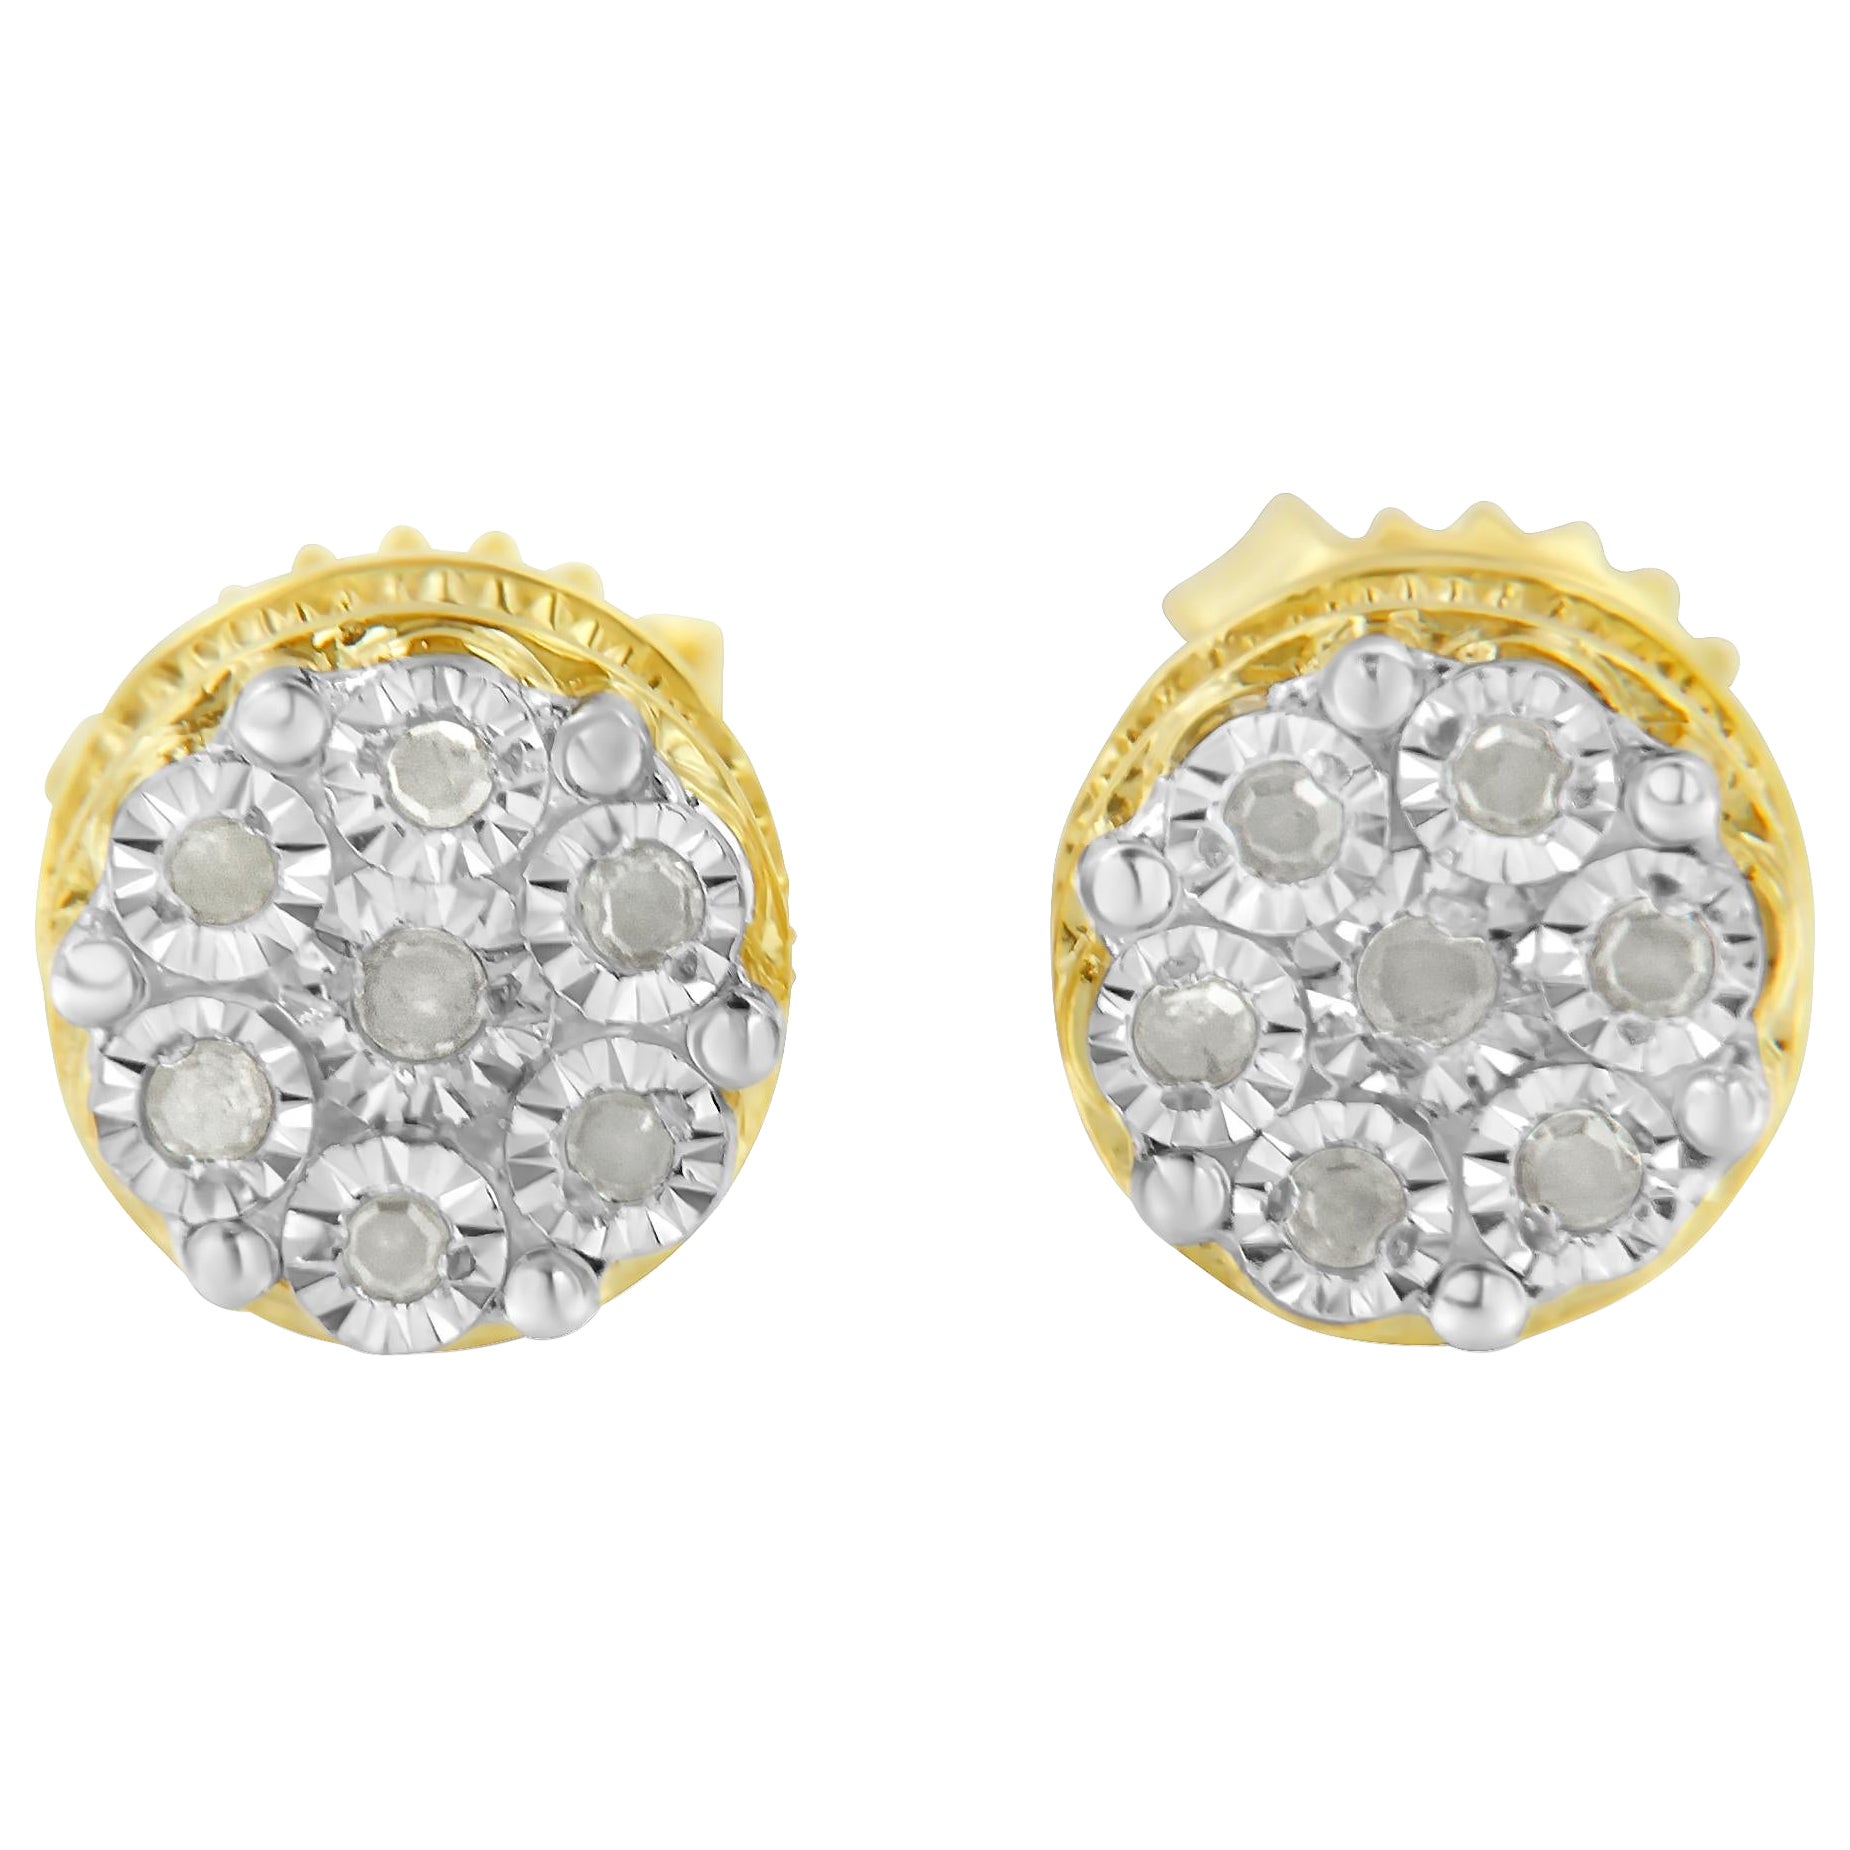 Clous d'oreilles en or jaune 14 carats sur argent sertis de diamants de 1/7 carats